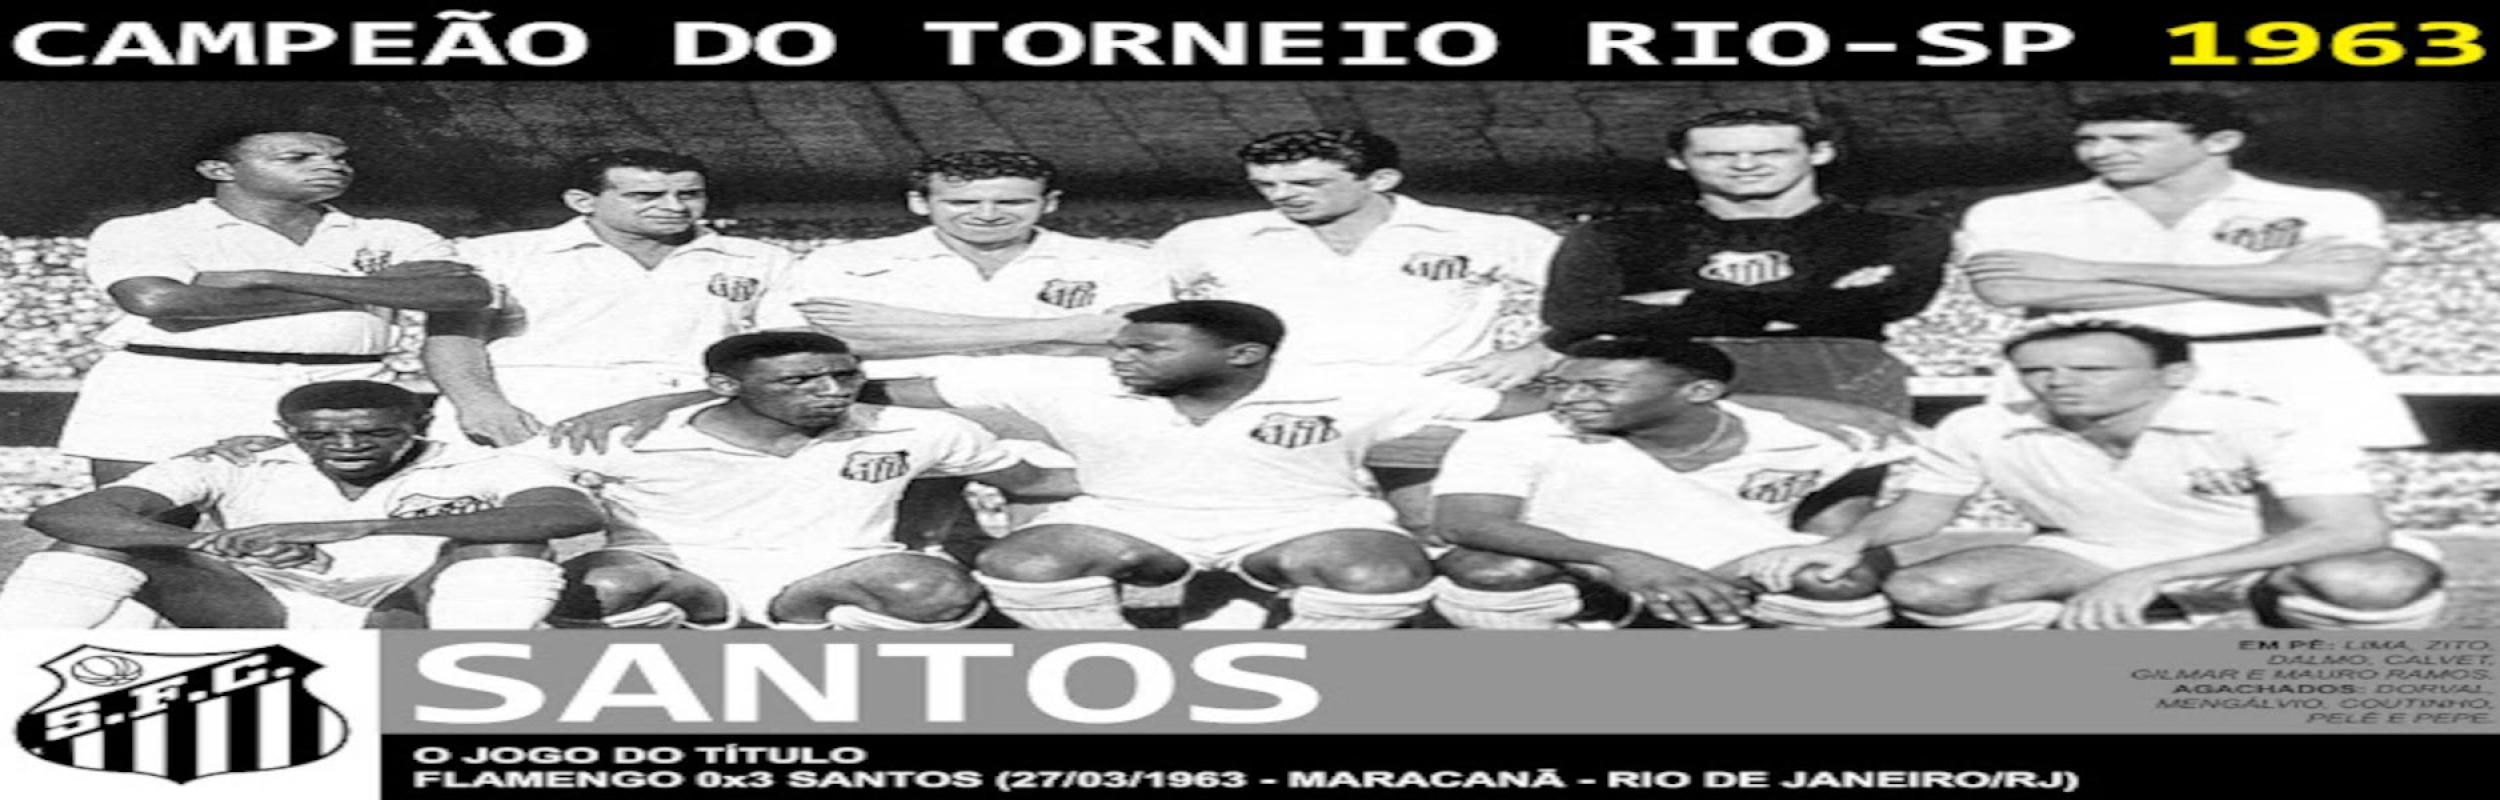 Torneio Rio-São Paulo 1963